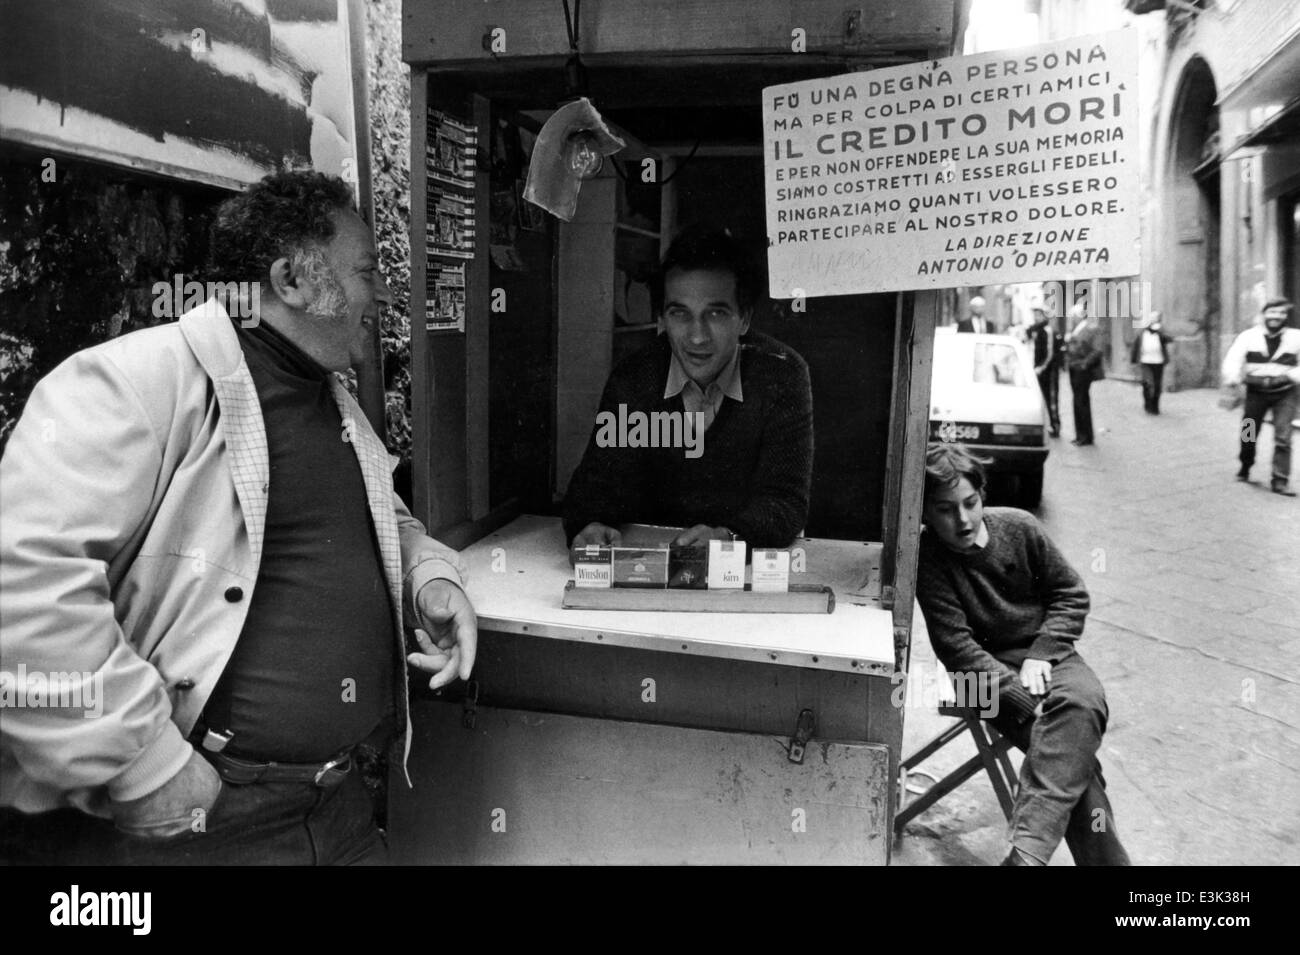 Il contrabbando di sigarette,Napoli,l'Italia,70s Foto Stock